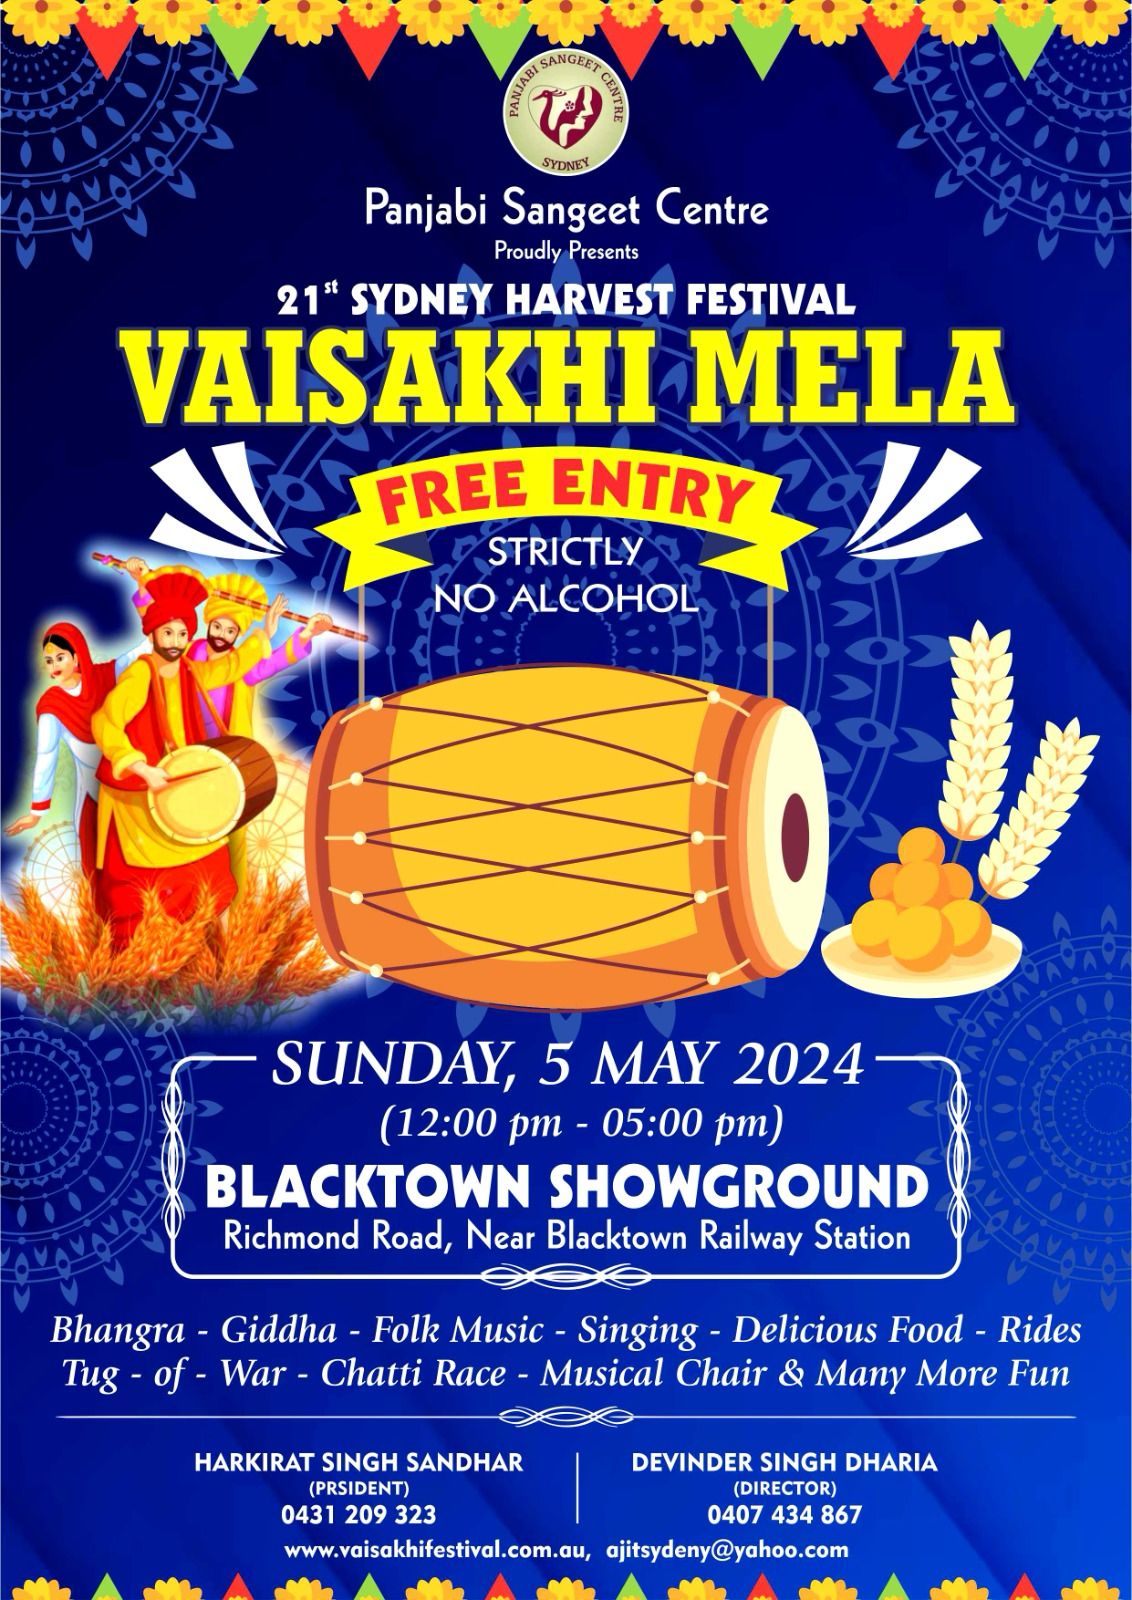 21st Sydney Harvest Festival Vaisakhi Mela 2024 in Blacktown Showground